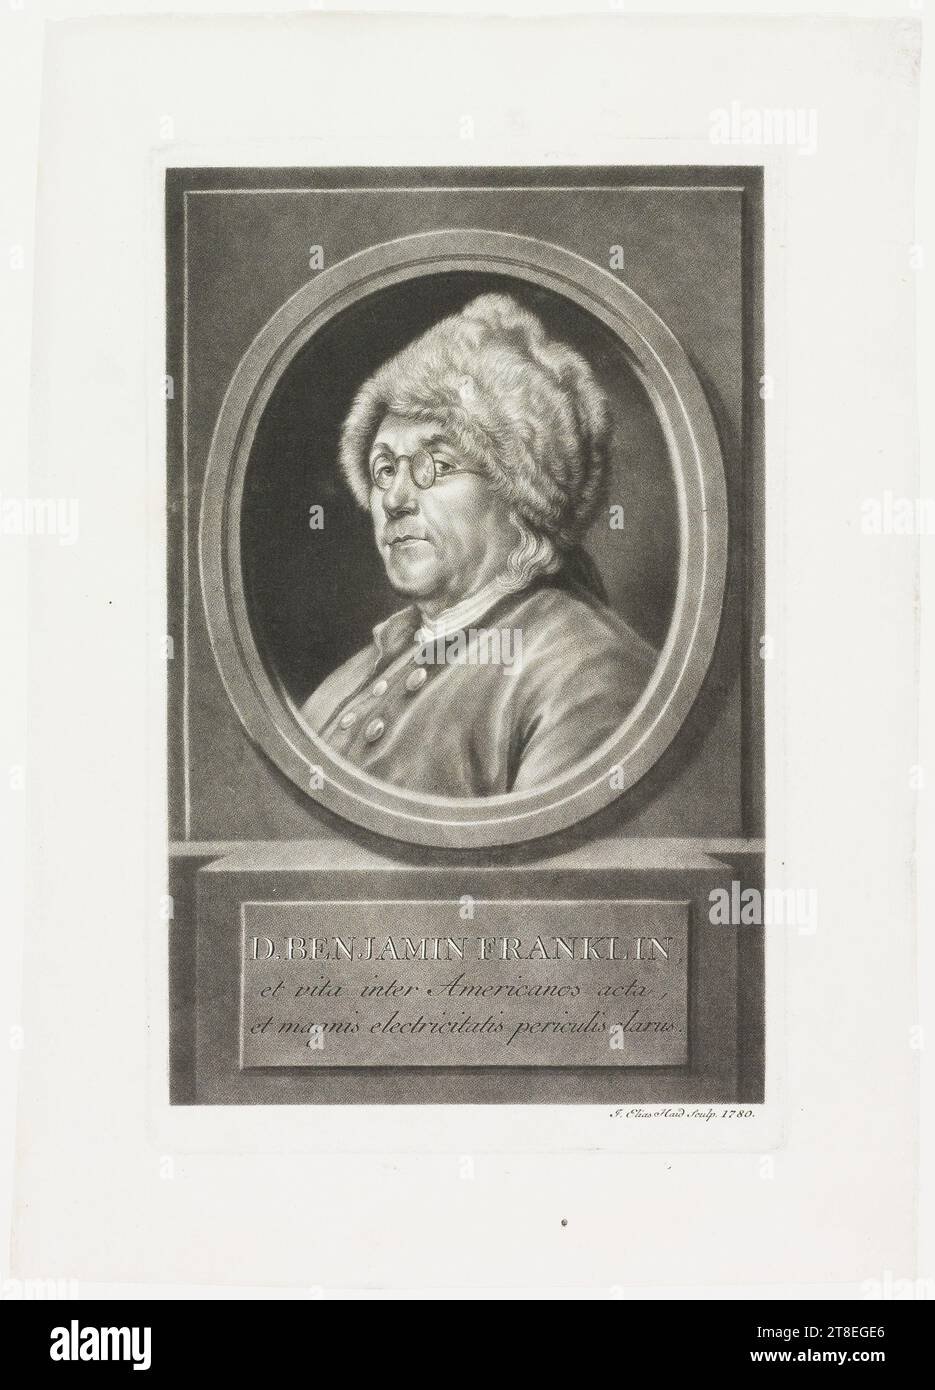 D BENJAMIN FRANKLIN; et vita inter Americanos acta, et magnis electricitatis periculis clarus. J. Elias Haid Sculp. 1780 Stock Photo